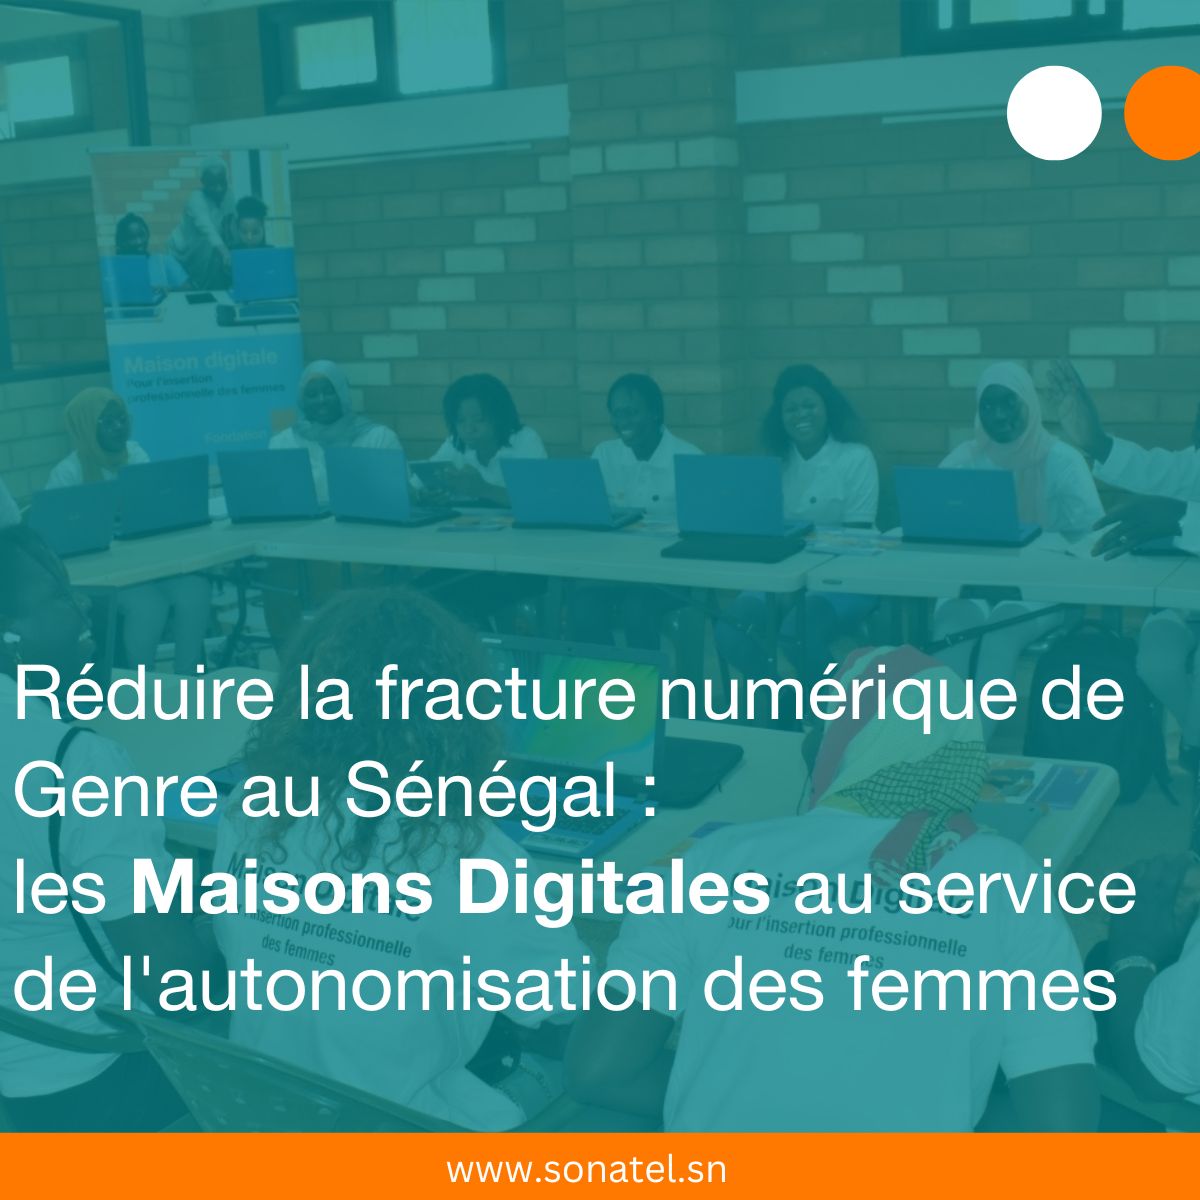 Réduire la fracture numérique de Genre au Sénégal : les Maisons Digitales au service de l’autonomisation des femmes